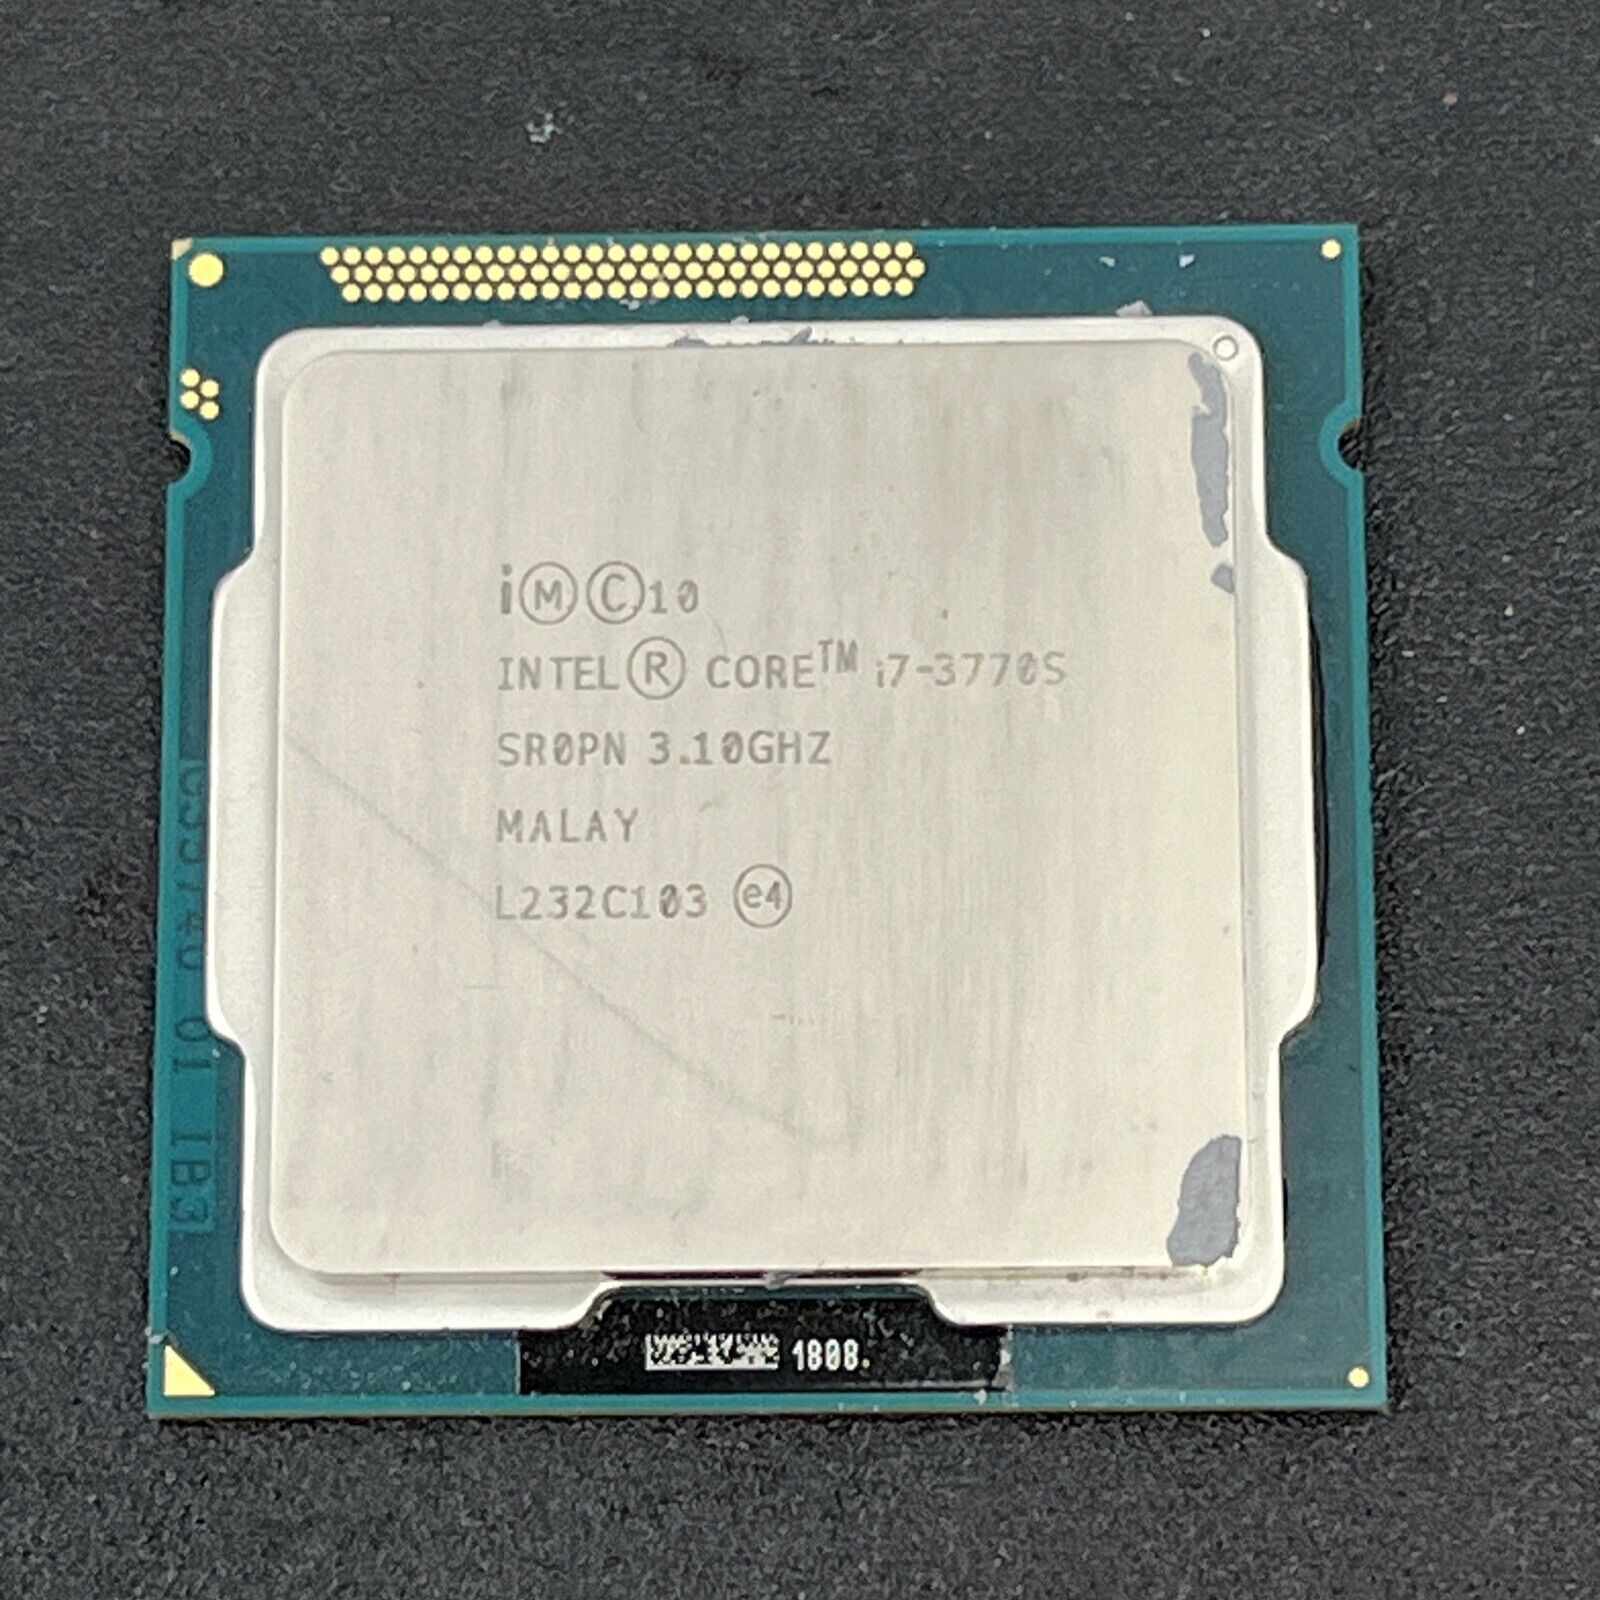 Intel Core i7-3770S CPU 3.10 GHZ 8M Cache Quad-Core Processor LGA1155 SR0PN